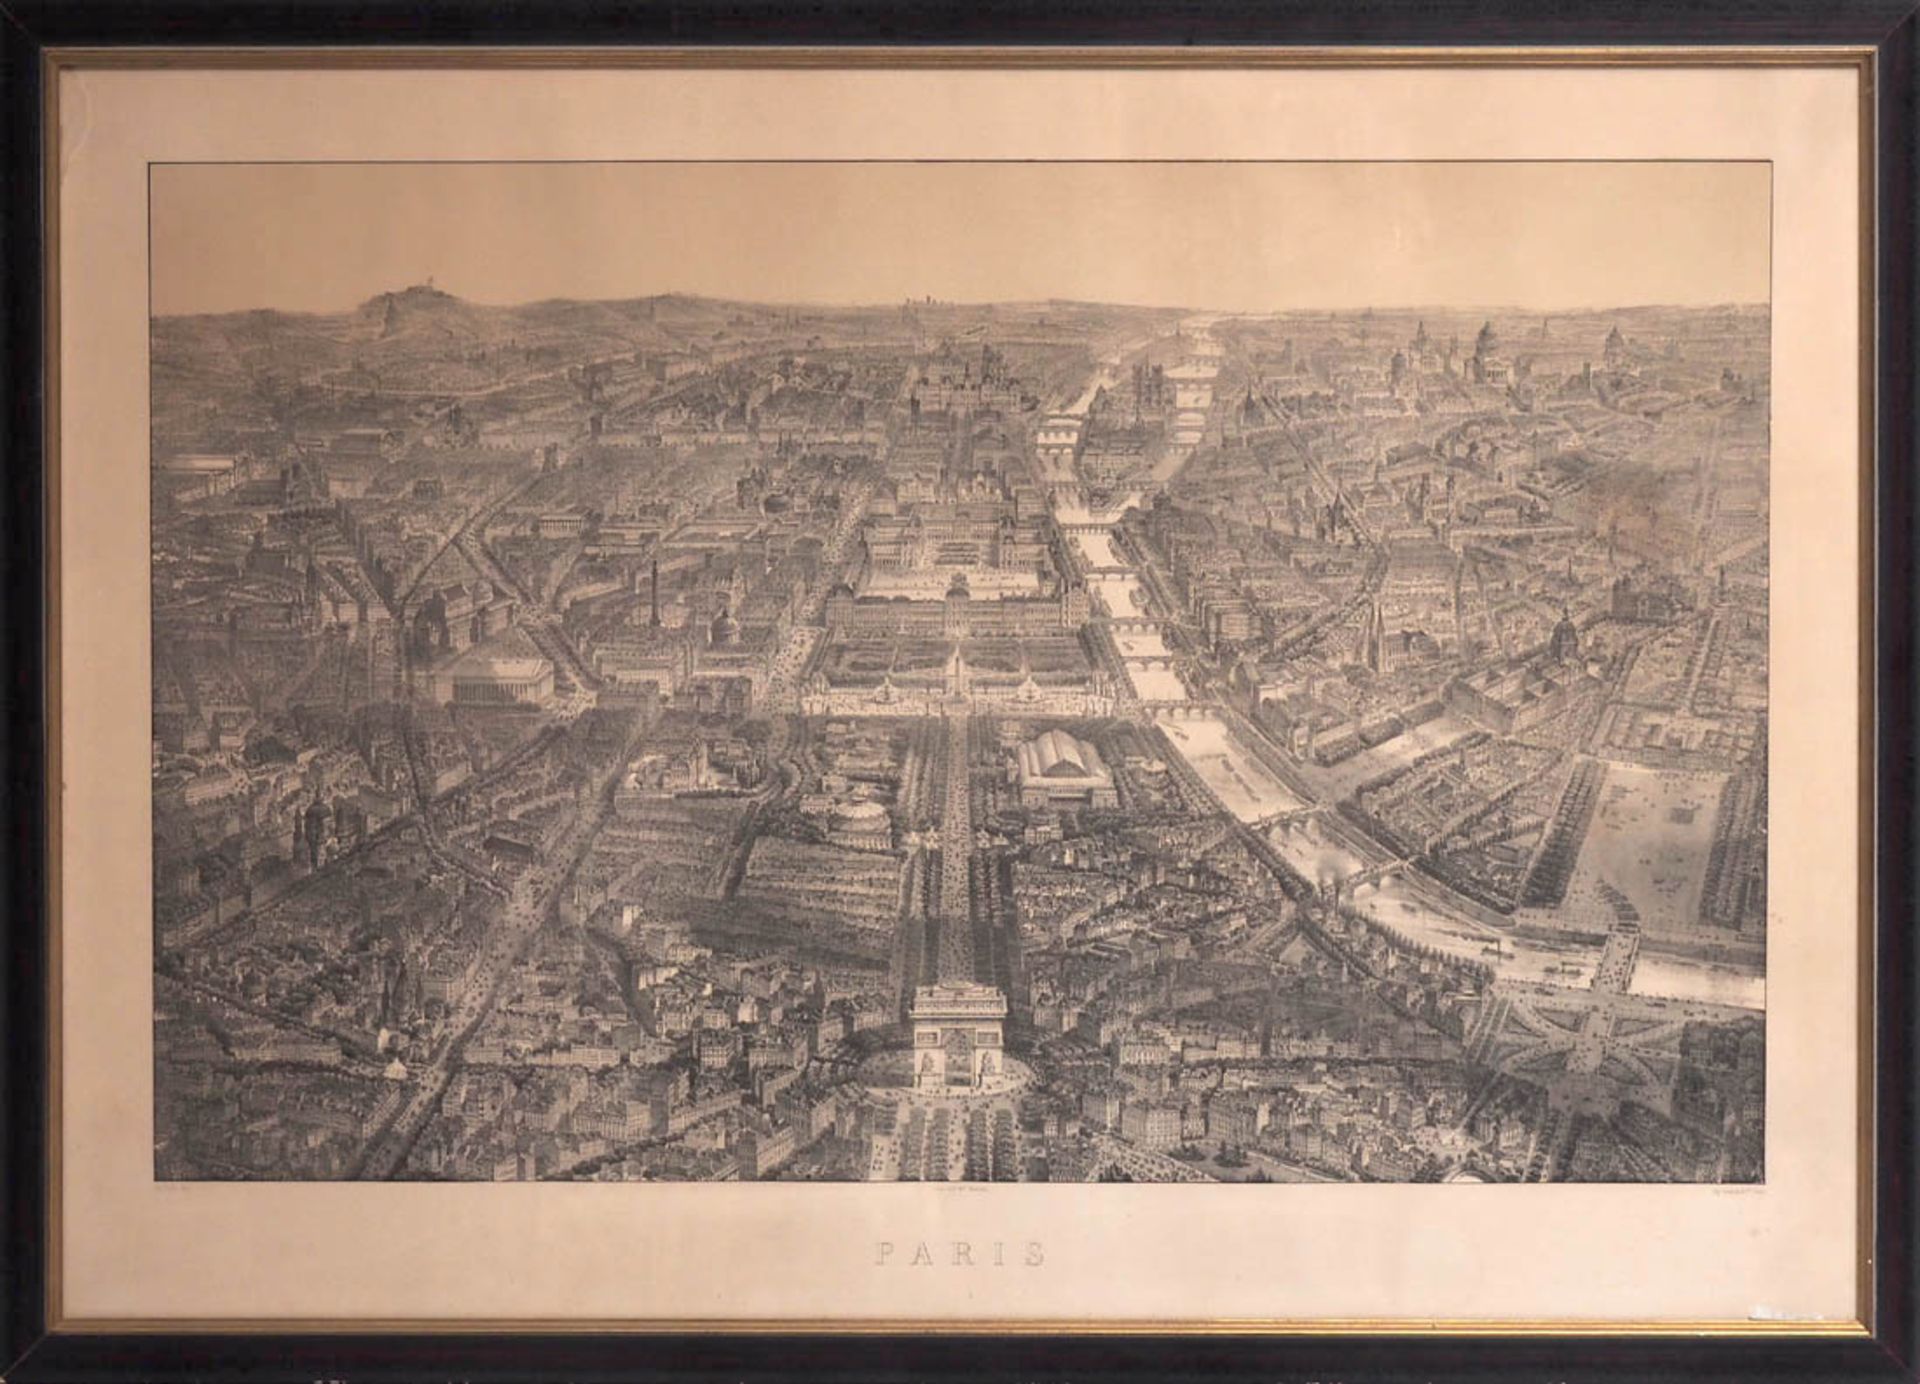 Ansicht von Paris aus der Vogelschau Lithographie. Originaler Rahmen aus der Zeit. Blattmaß 77x105.